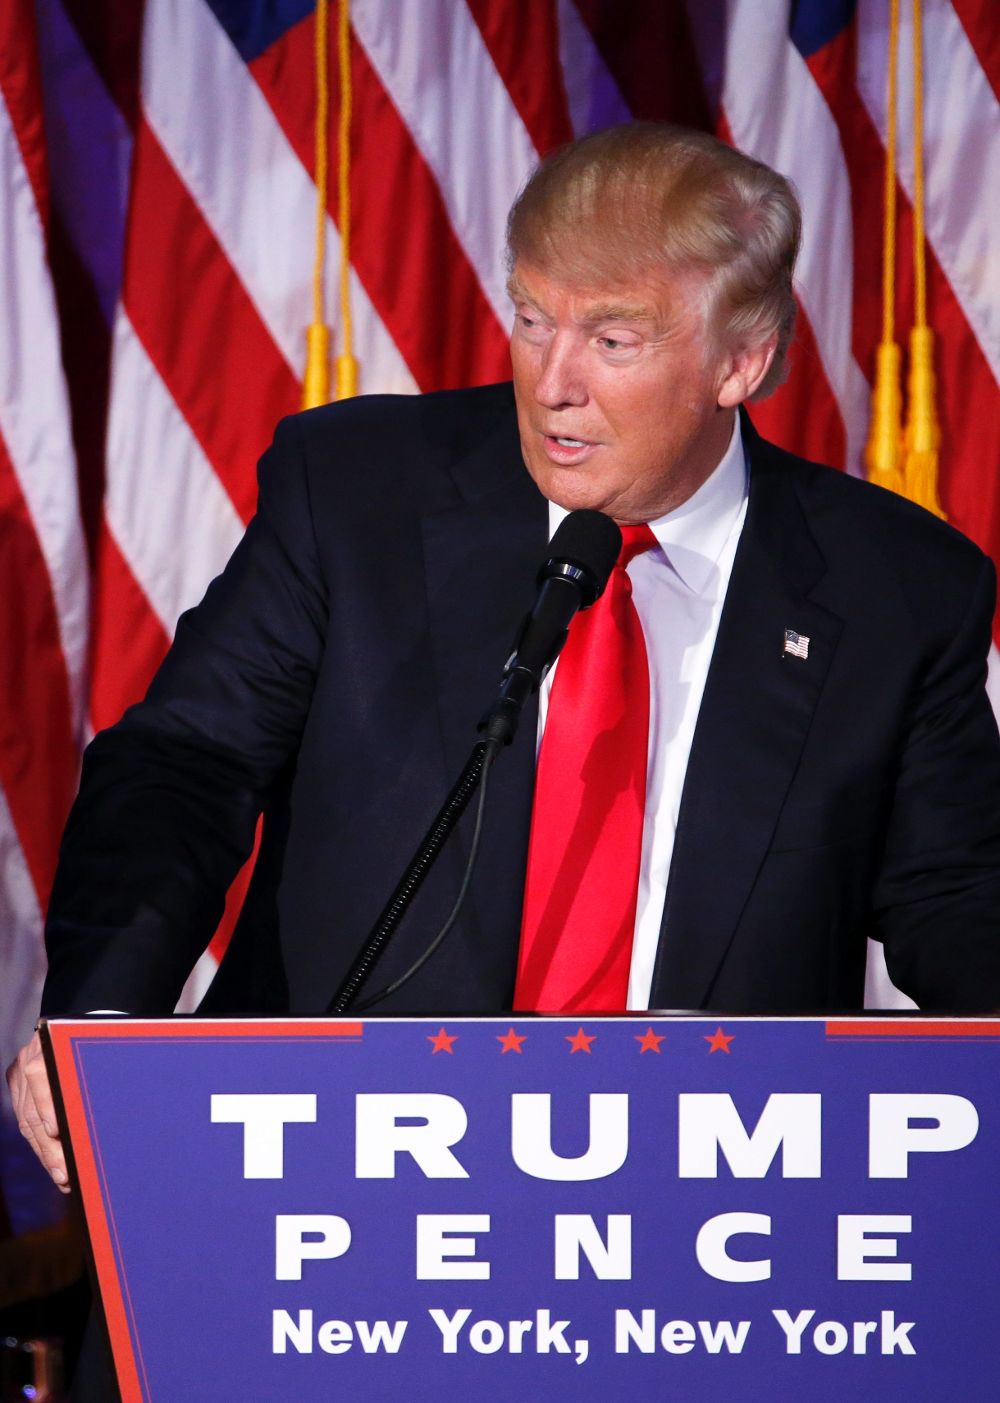 El candidato republicano a la Presidencia, Donald Trump (c), pronuncia un discurso ante sus simpatizantes durante la fiesta electoral organizada en el New York Hilton Midtown de Nueva York (Estados Unidos).